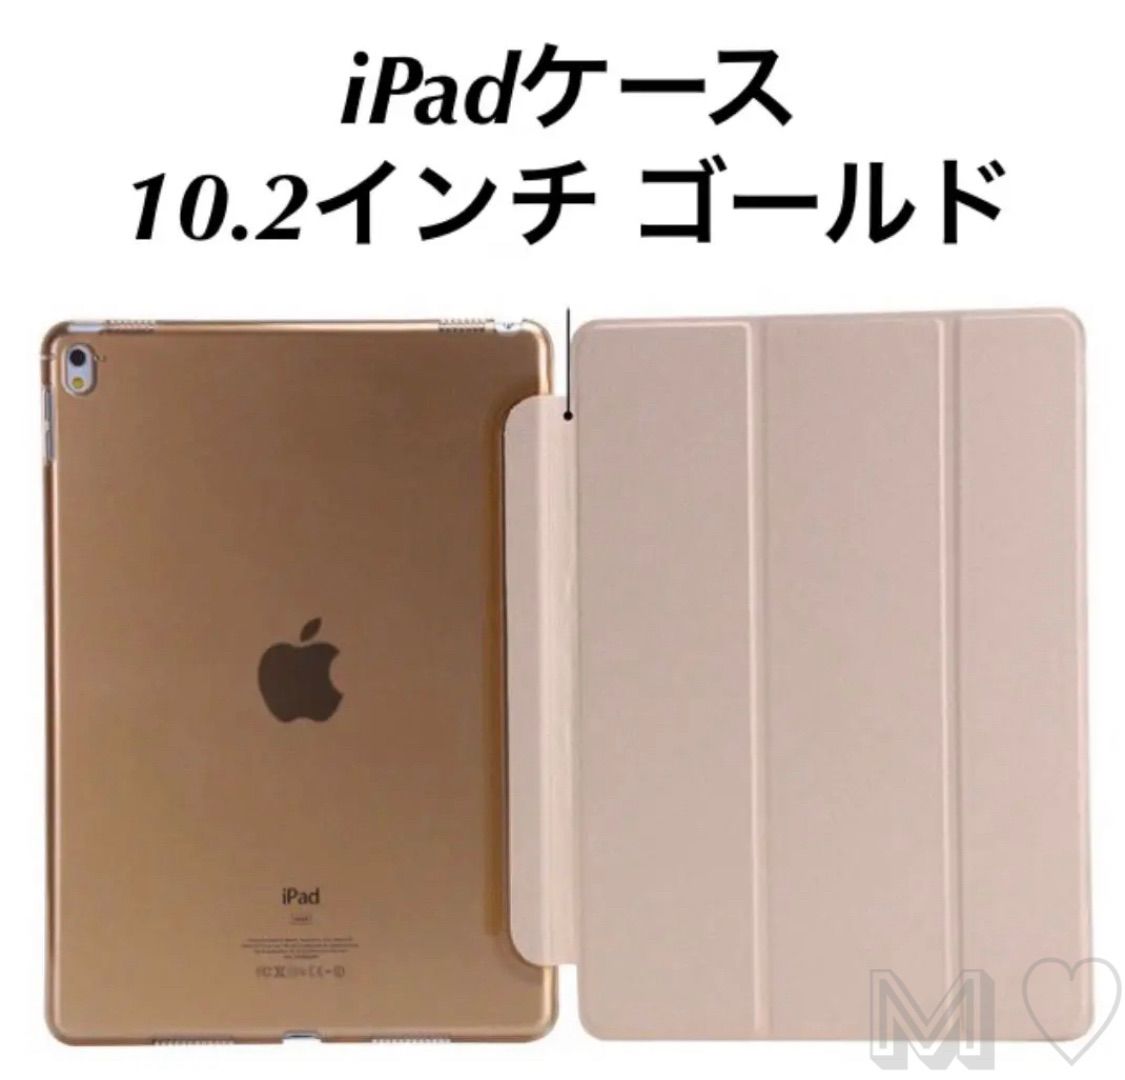 iPadケース 10.2インチシェルカバー第7 8 9世代 ゴールド - 通販